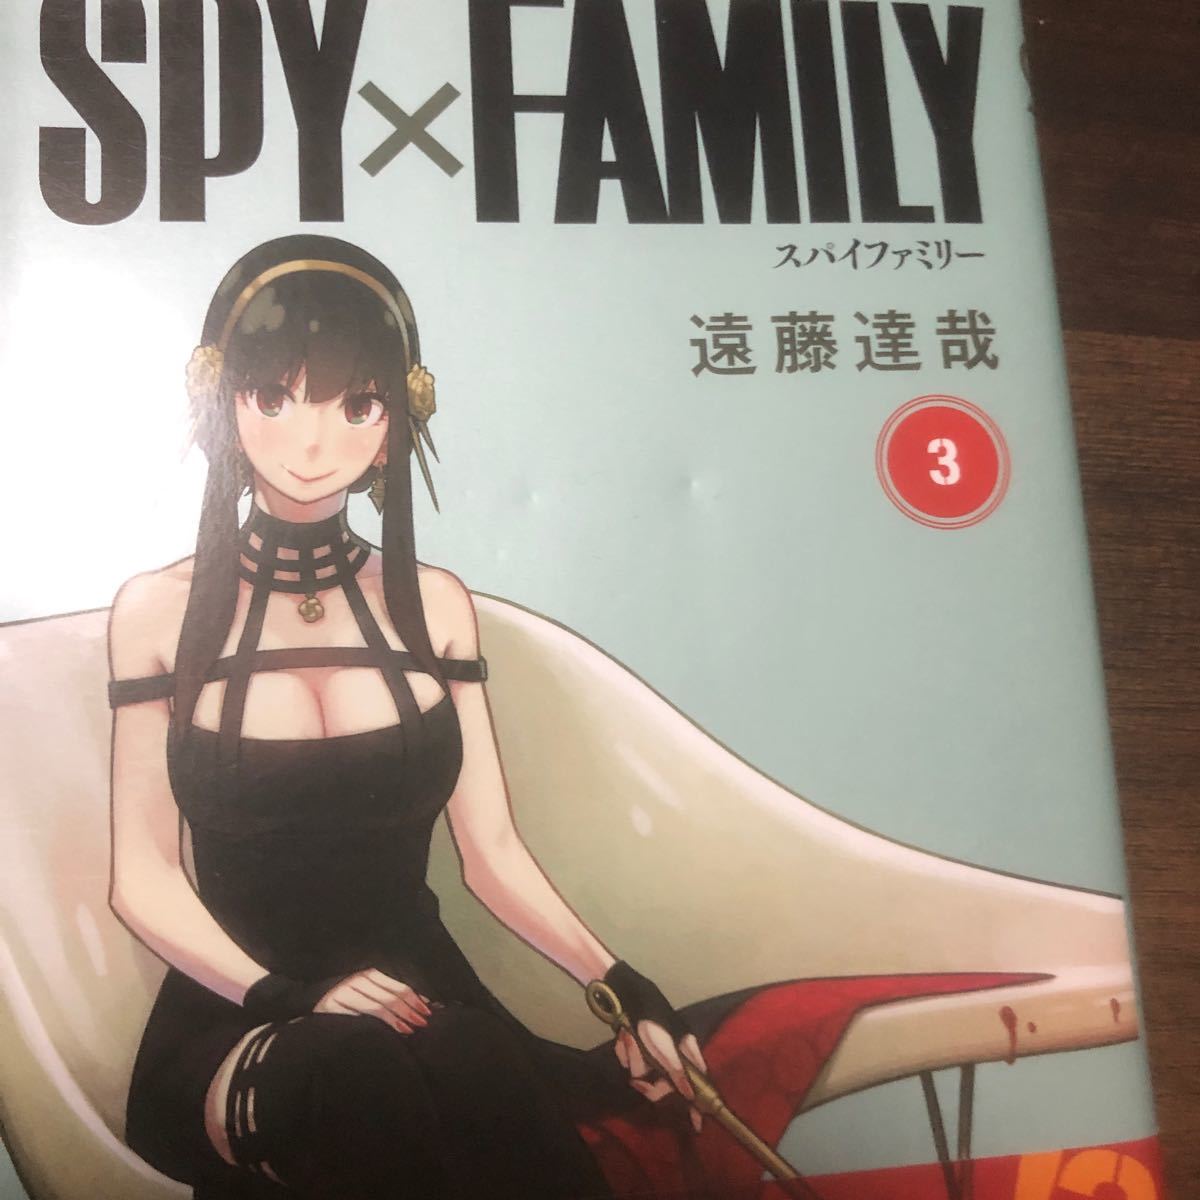 漫画 スパイファミリー 1巻〜7巻 既刊全巻セット ほぼ初版 SPY×FAMILY